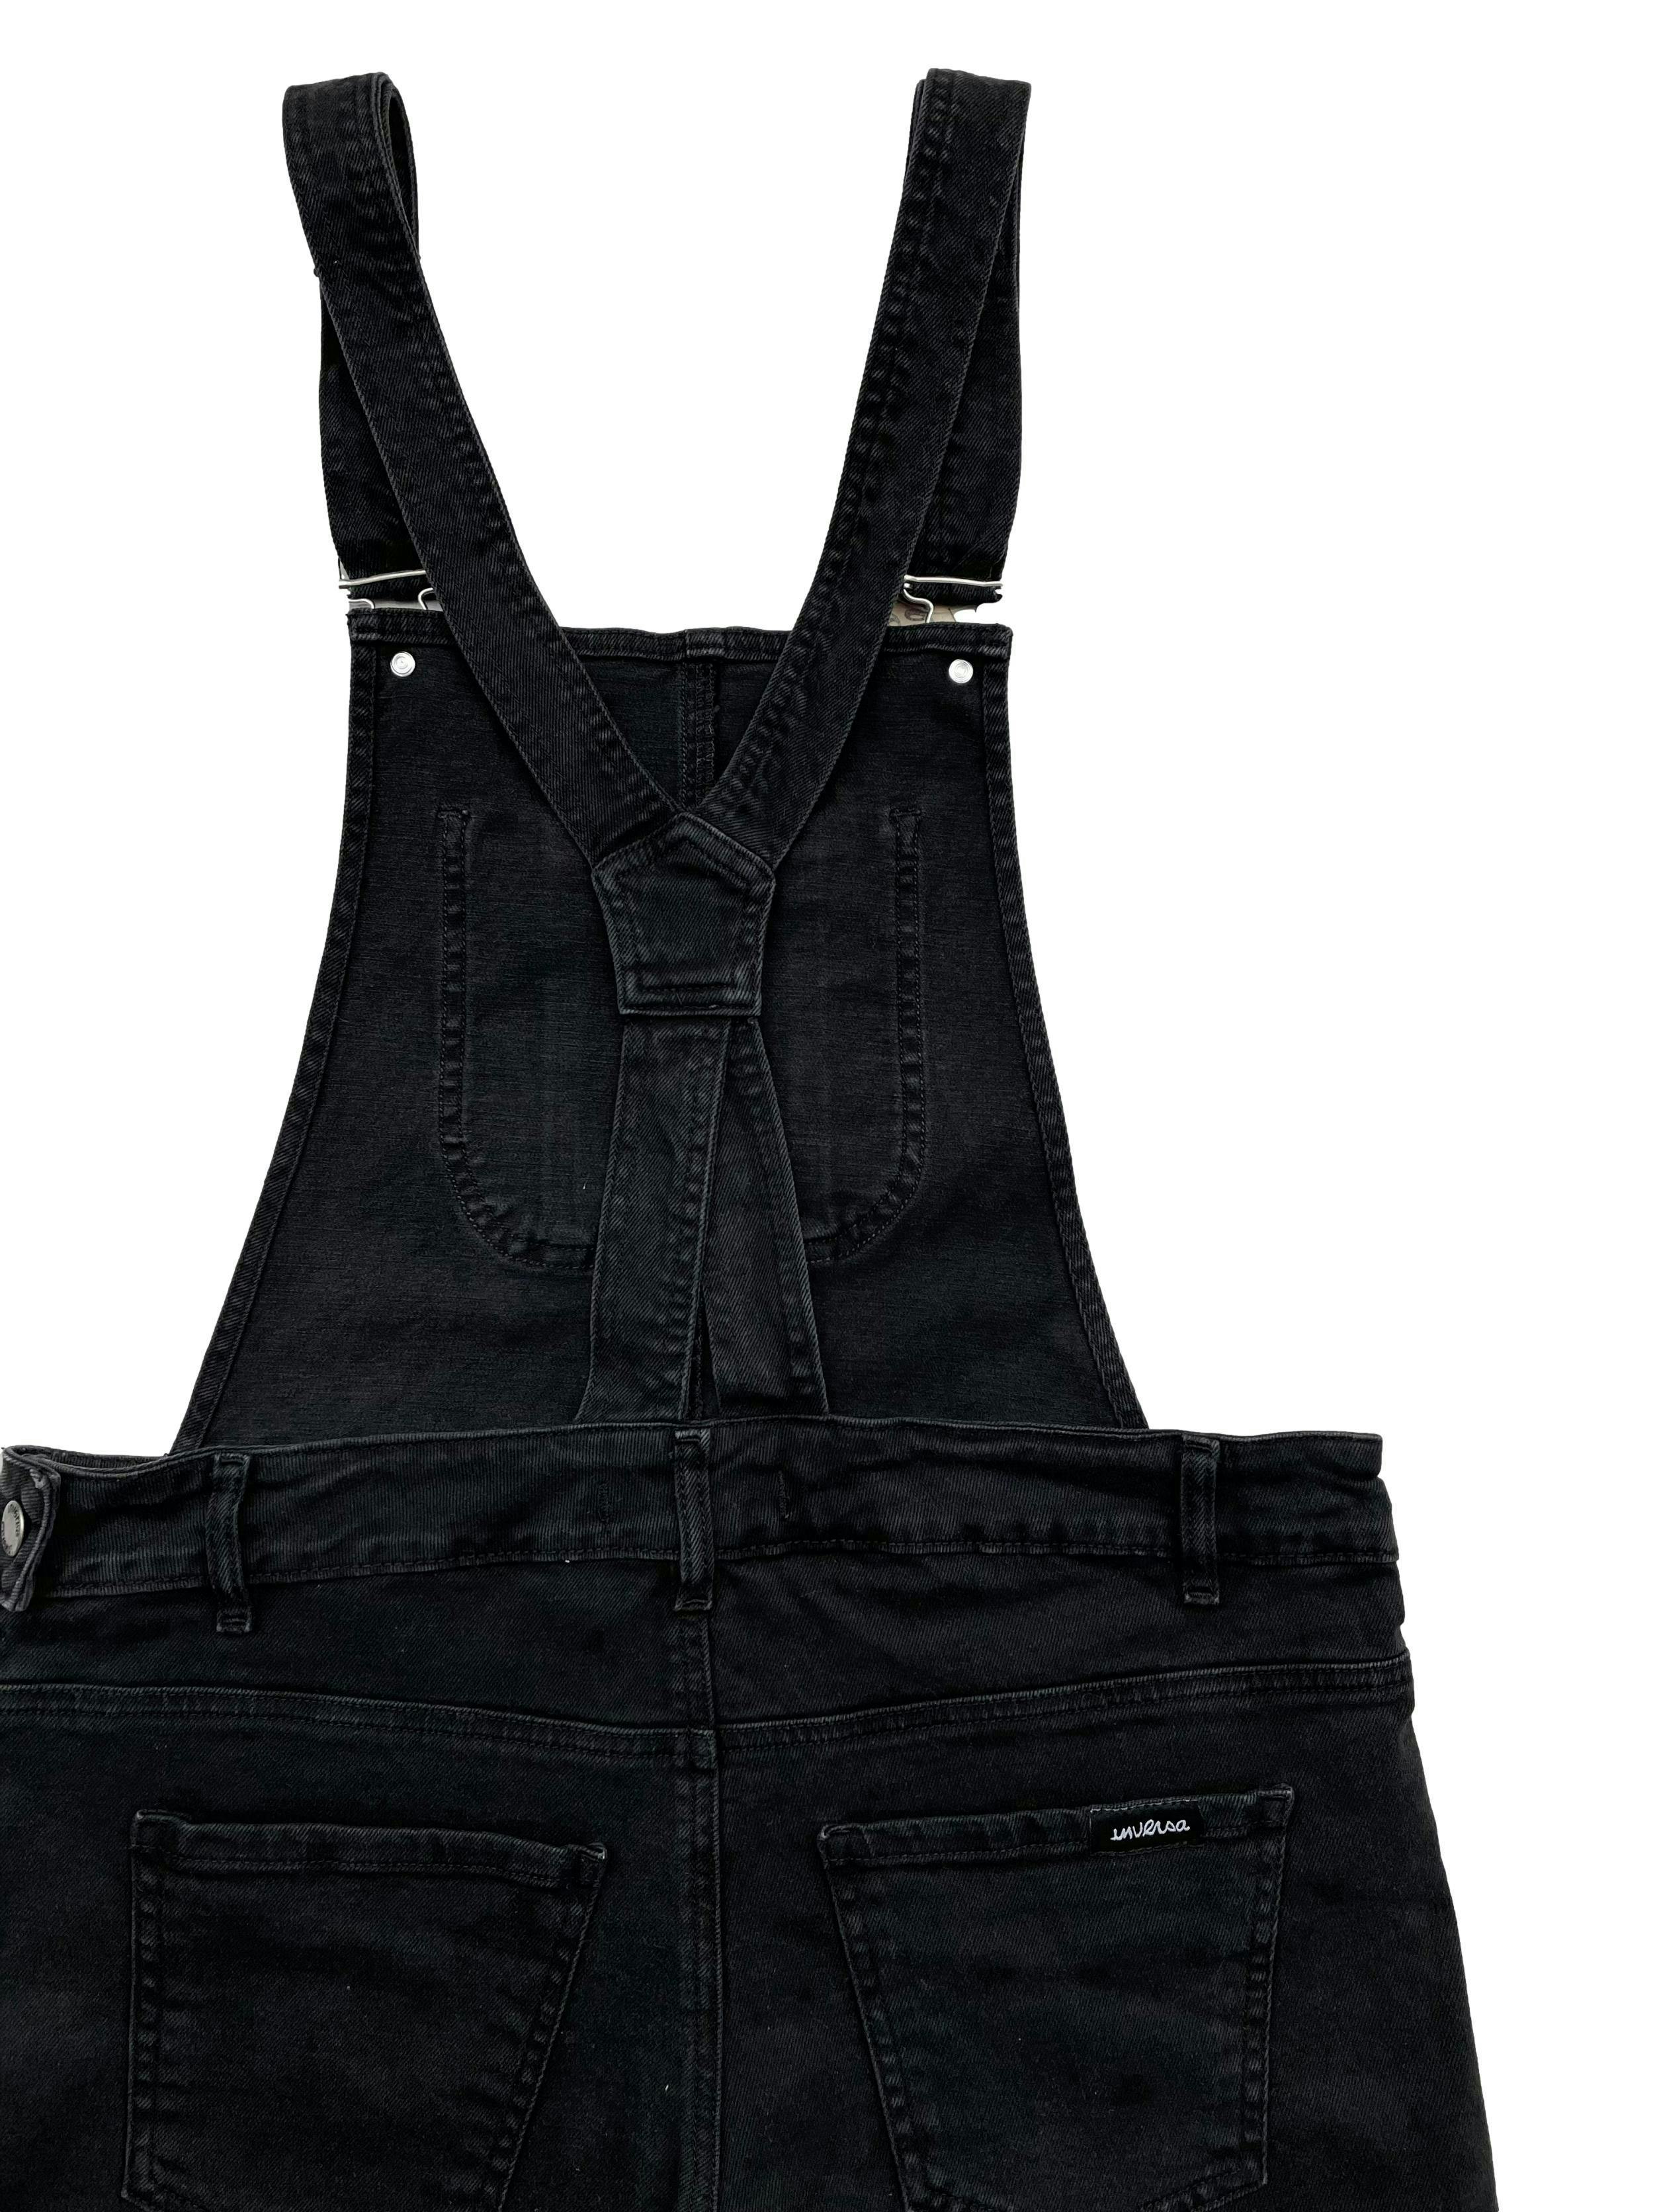 Jumper jean Inversa negro efecto lavado, con cierre lateral. Cadera 100cm Largo desde pecho 62cm